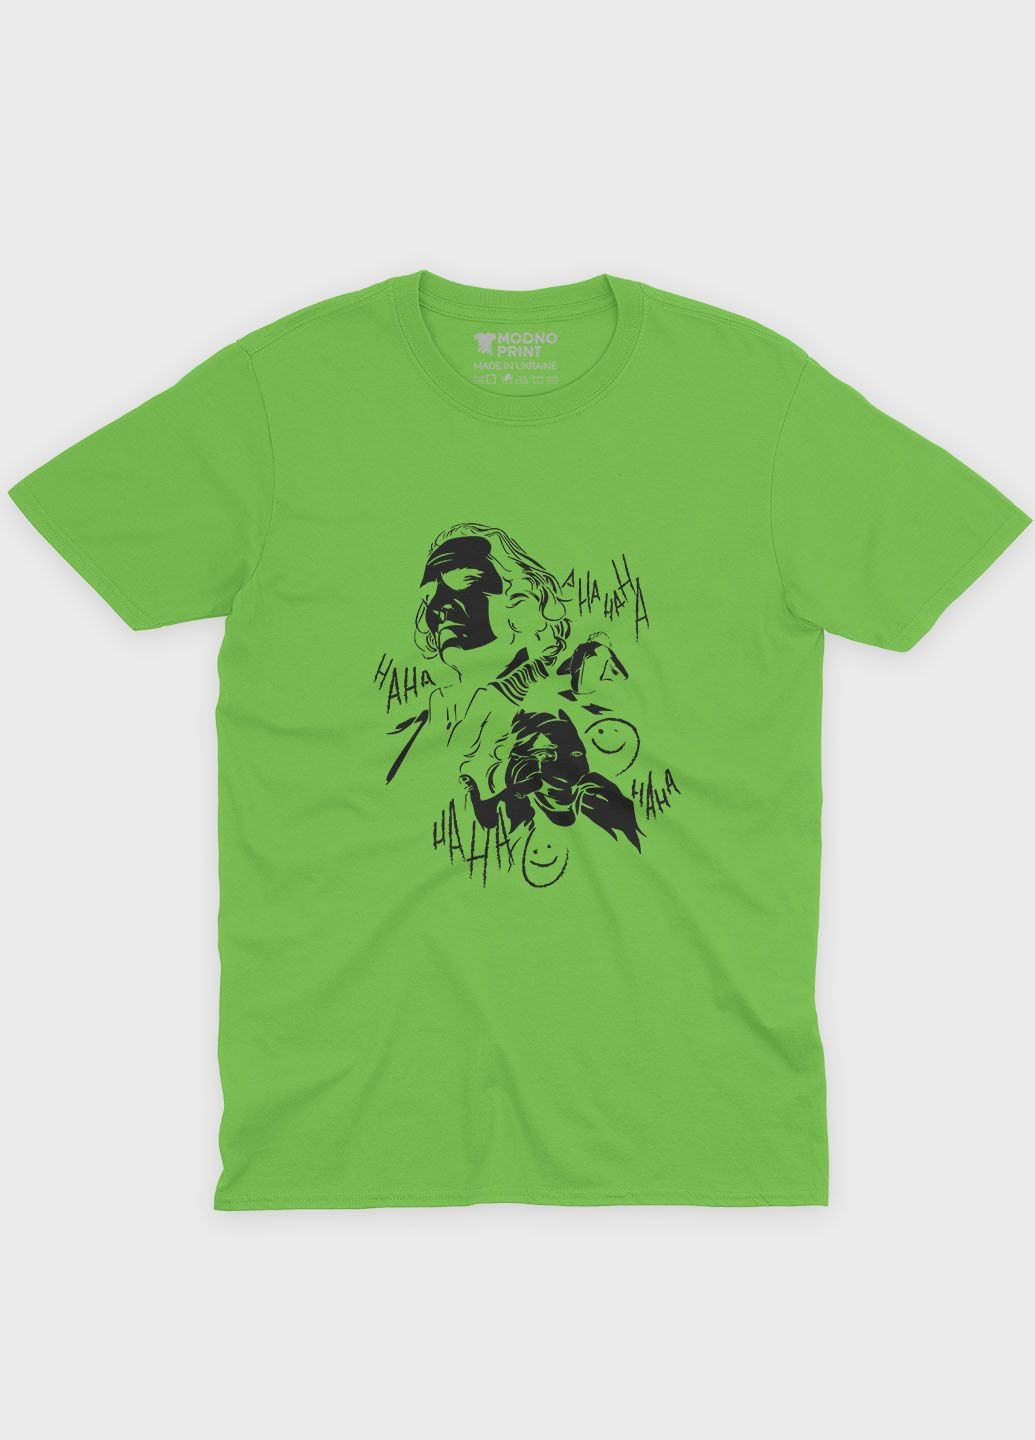 Салатовая демисезонная футболка для девочки с принтом супервора - джокер (ts001-1-kiw-006-005-024-g) Modno